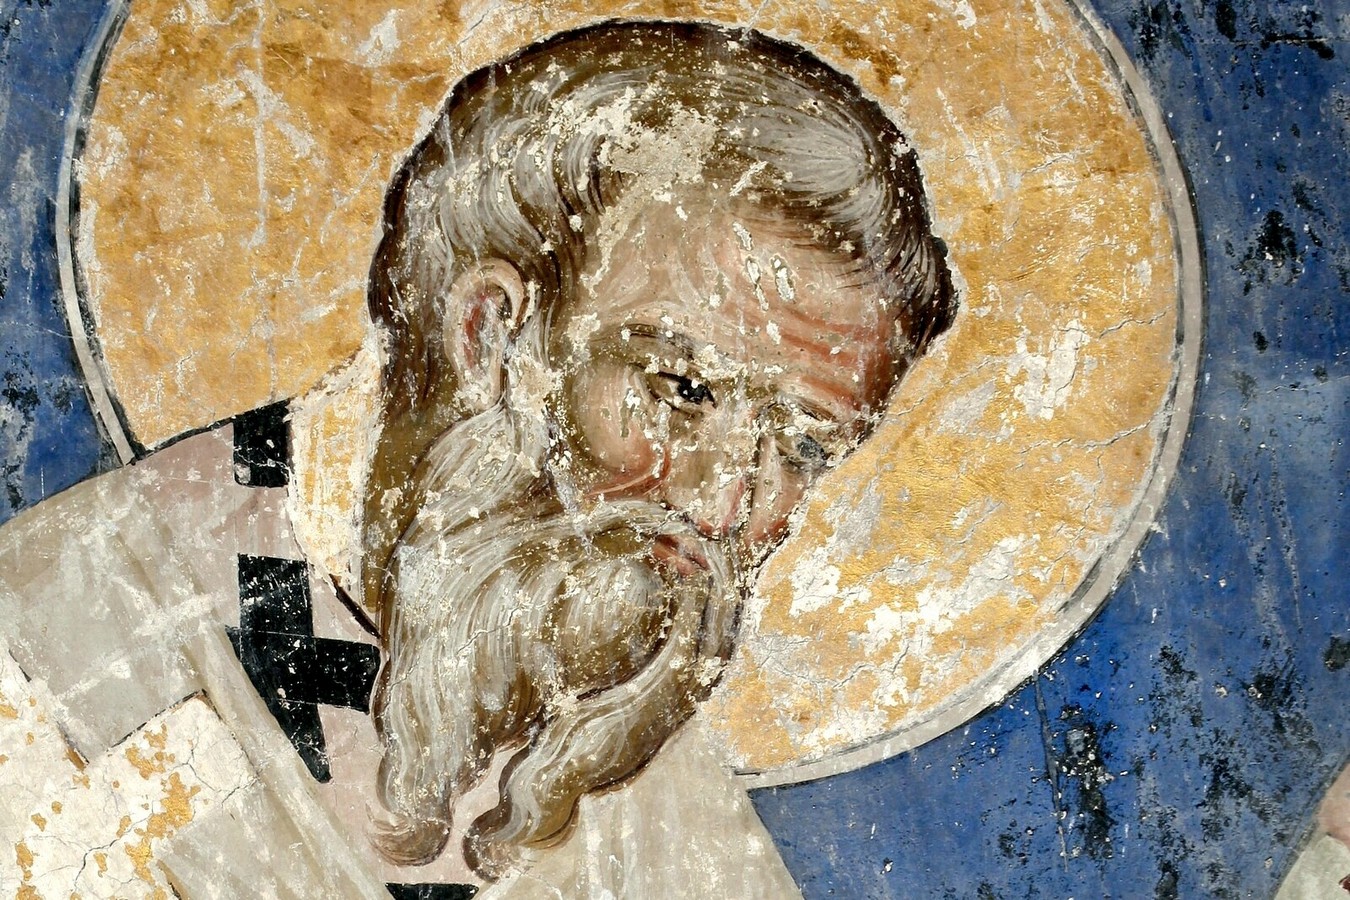 Святой Апостол Иаков, брат Господень. Фреска церкви Святой Троицы в монастыре Манасия (Ресава), Сербия. До 1418 года. Фрагмент.